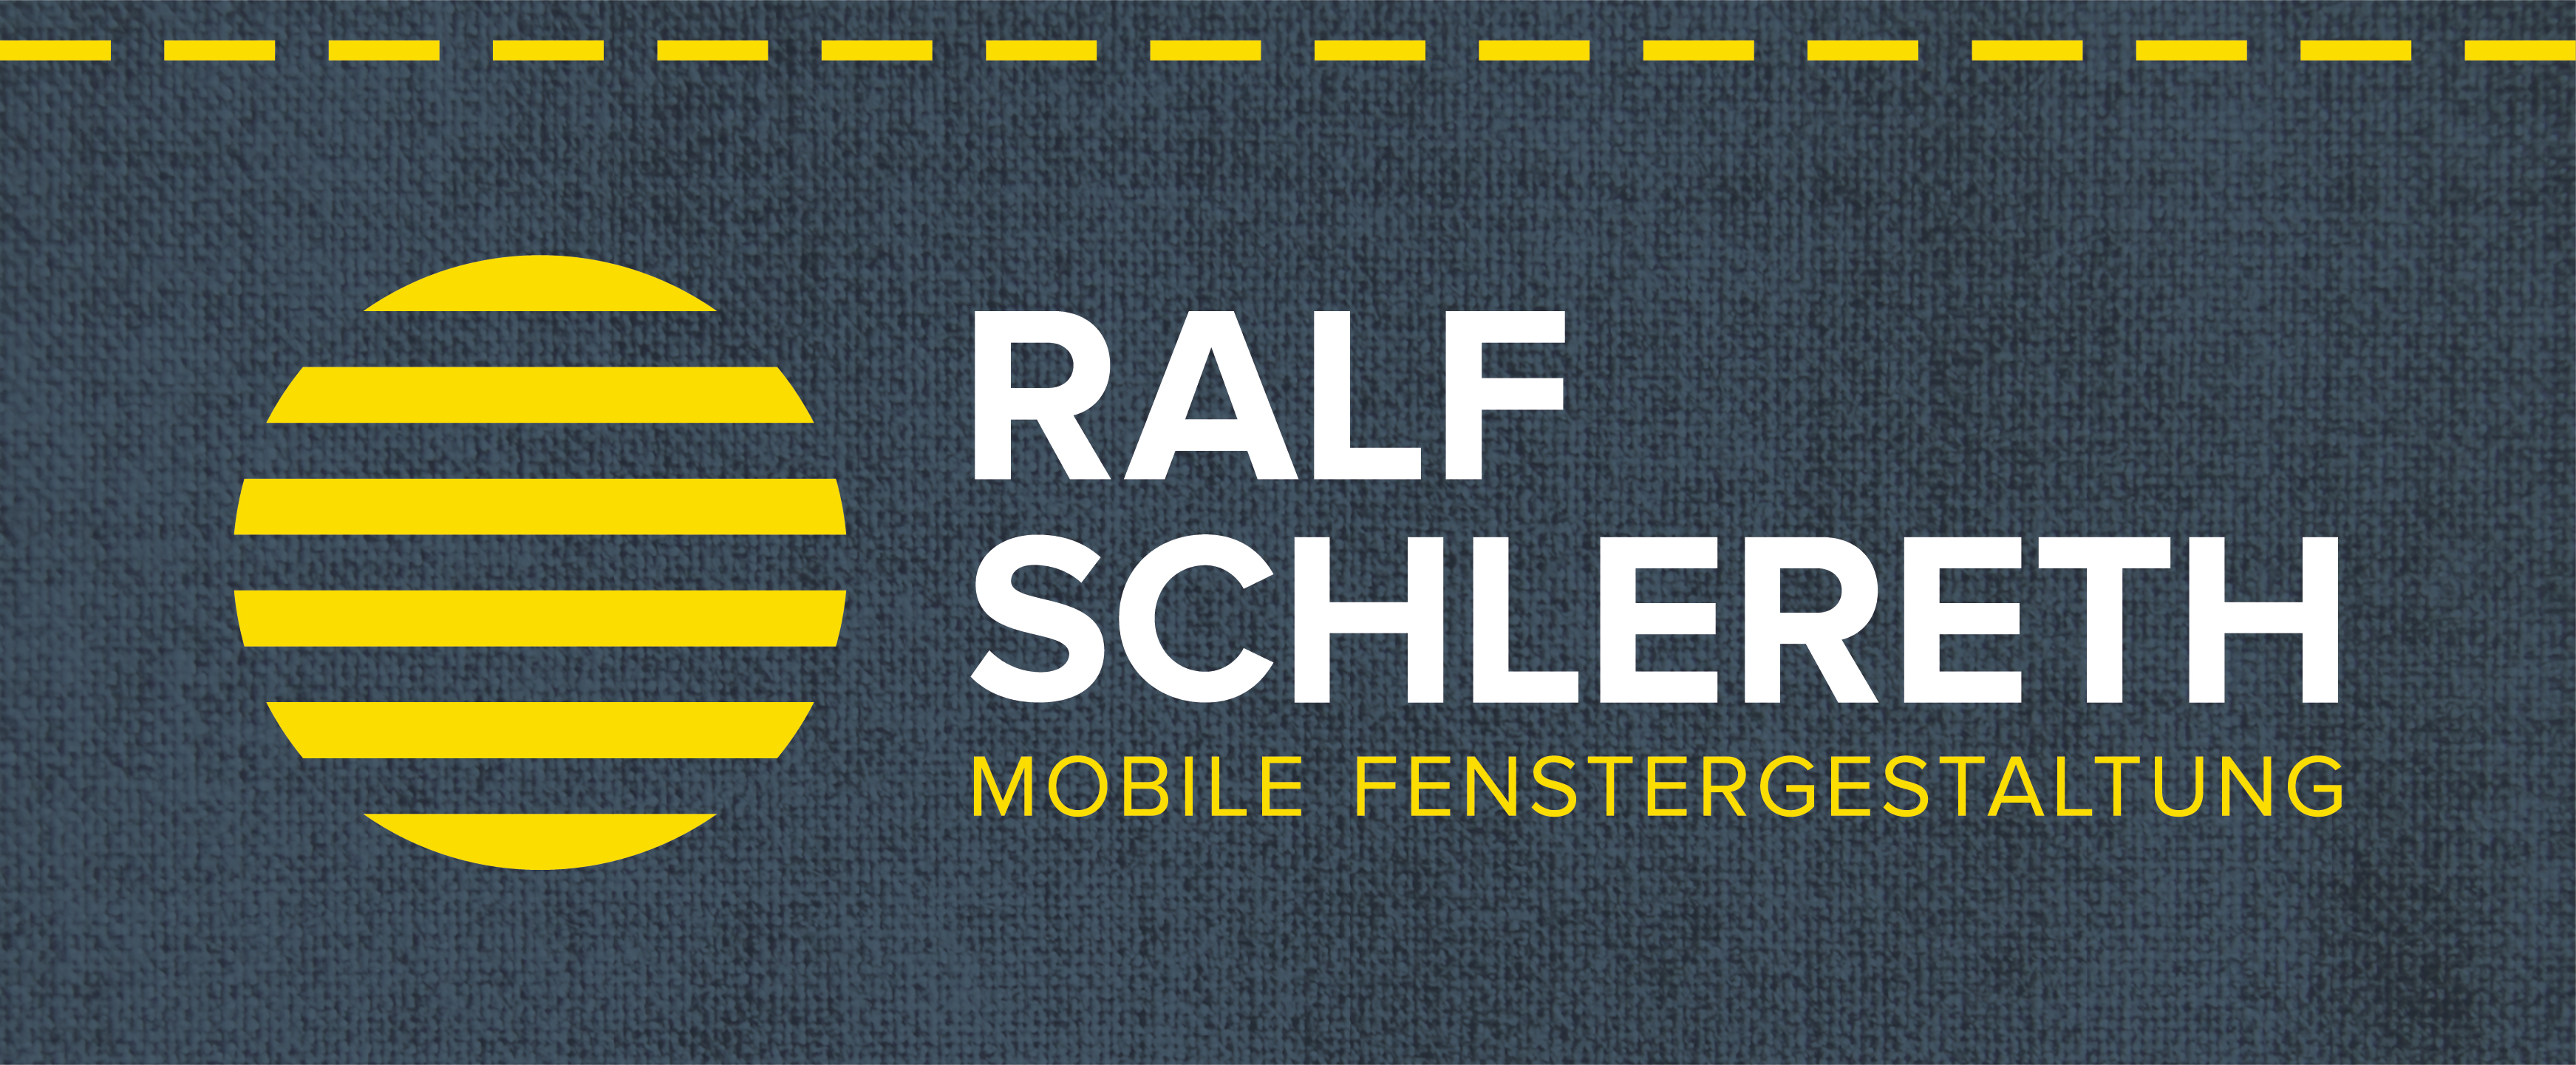 Ralf Schlereth | Mobile Fenstergestaltung